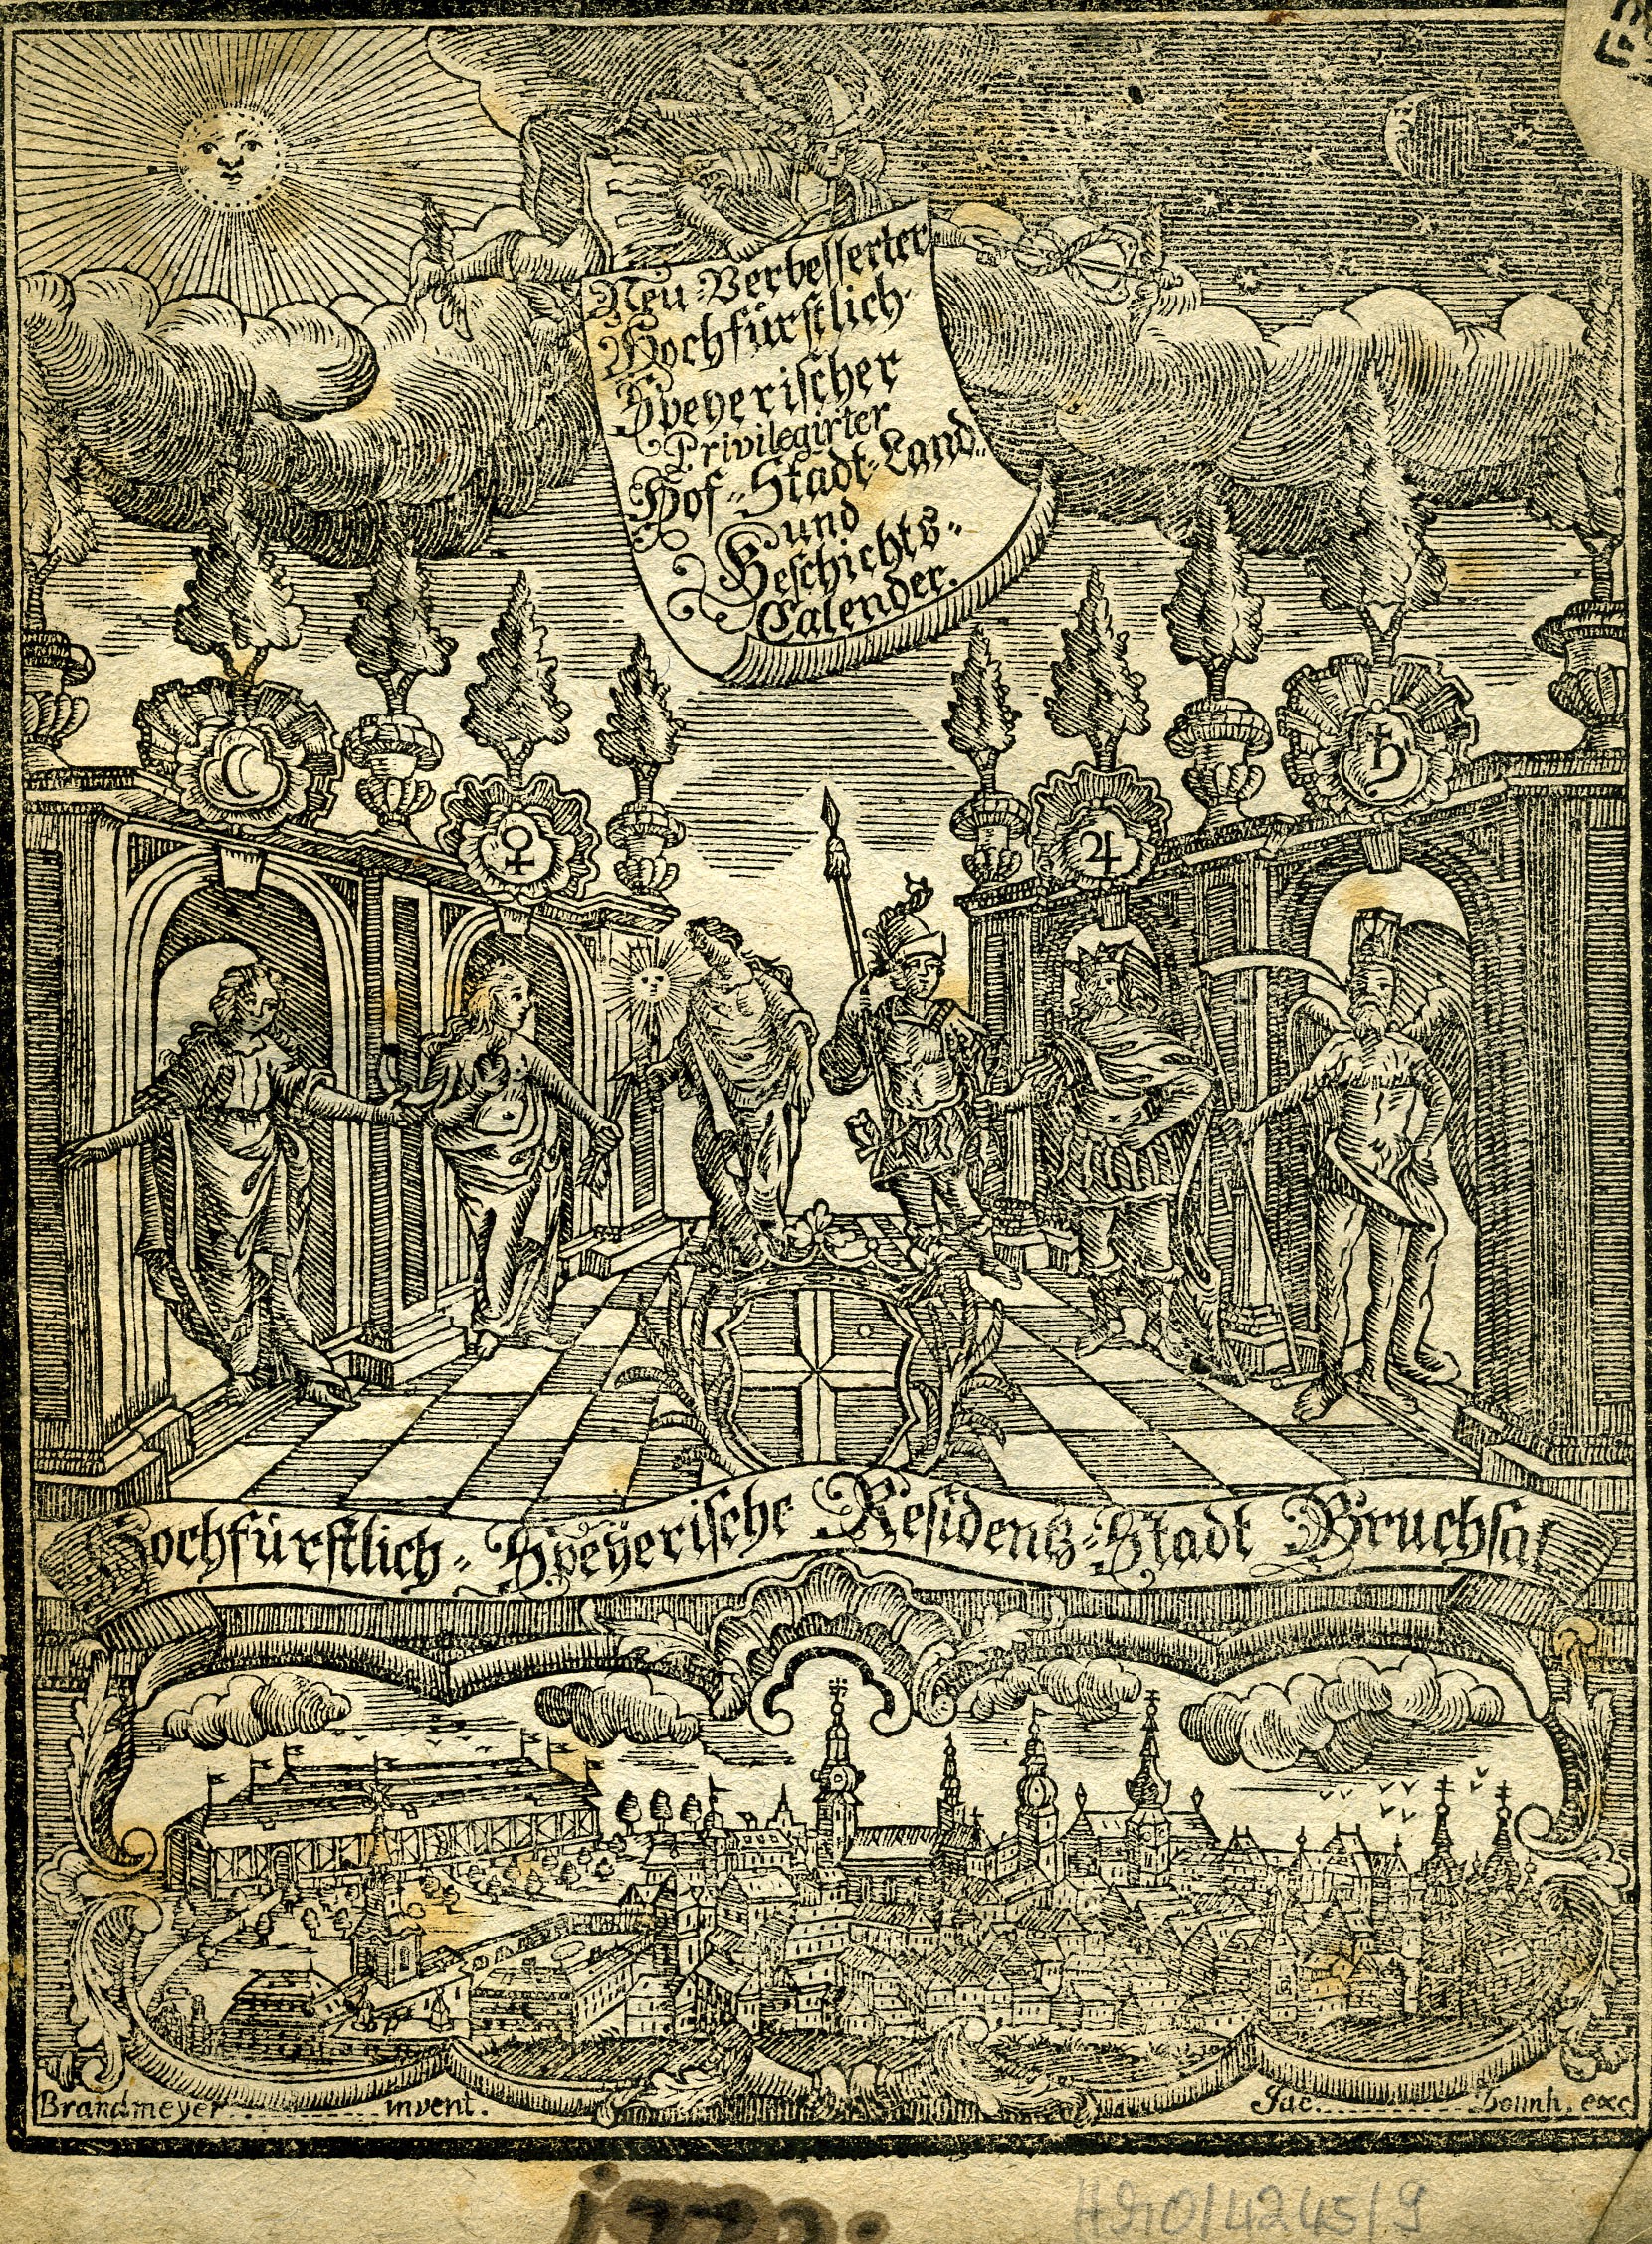 Hochfürstlicher Speyerischer Hof-, Stadt-, Land und Geschichtskalender für das Jahr 1772 (Historisches Museum der Pfalz, Speyer CC BY)